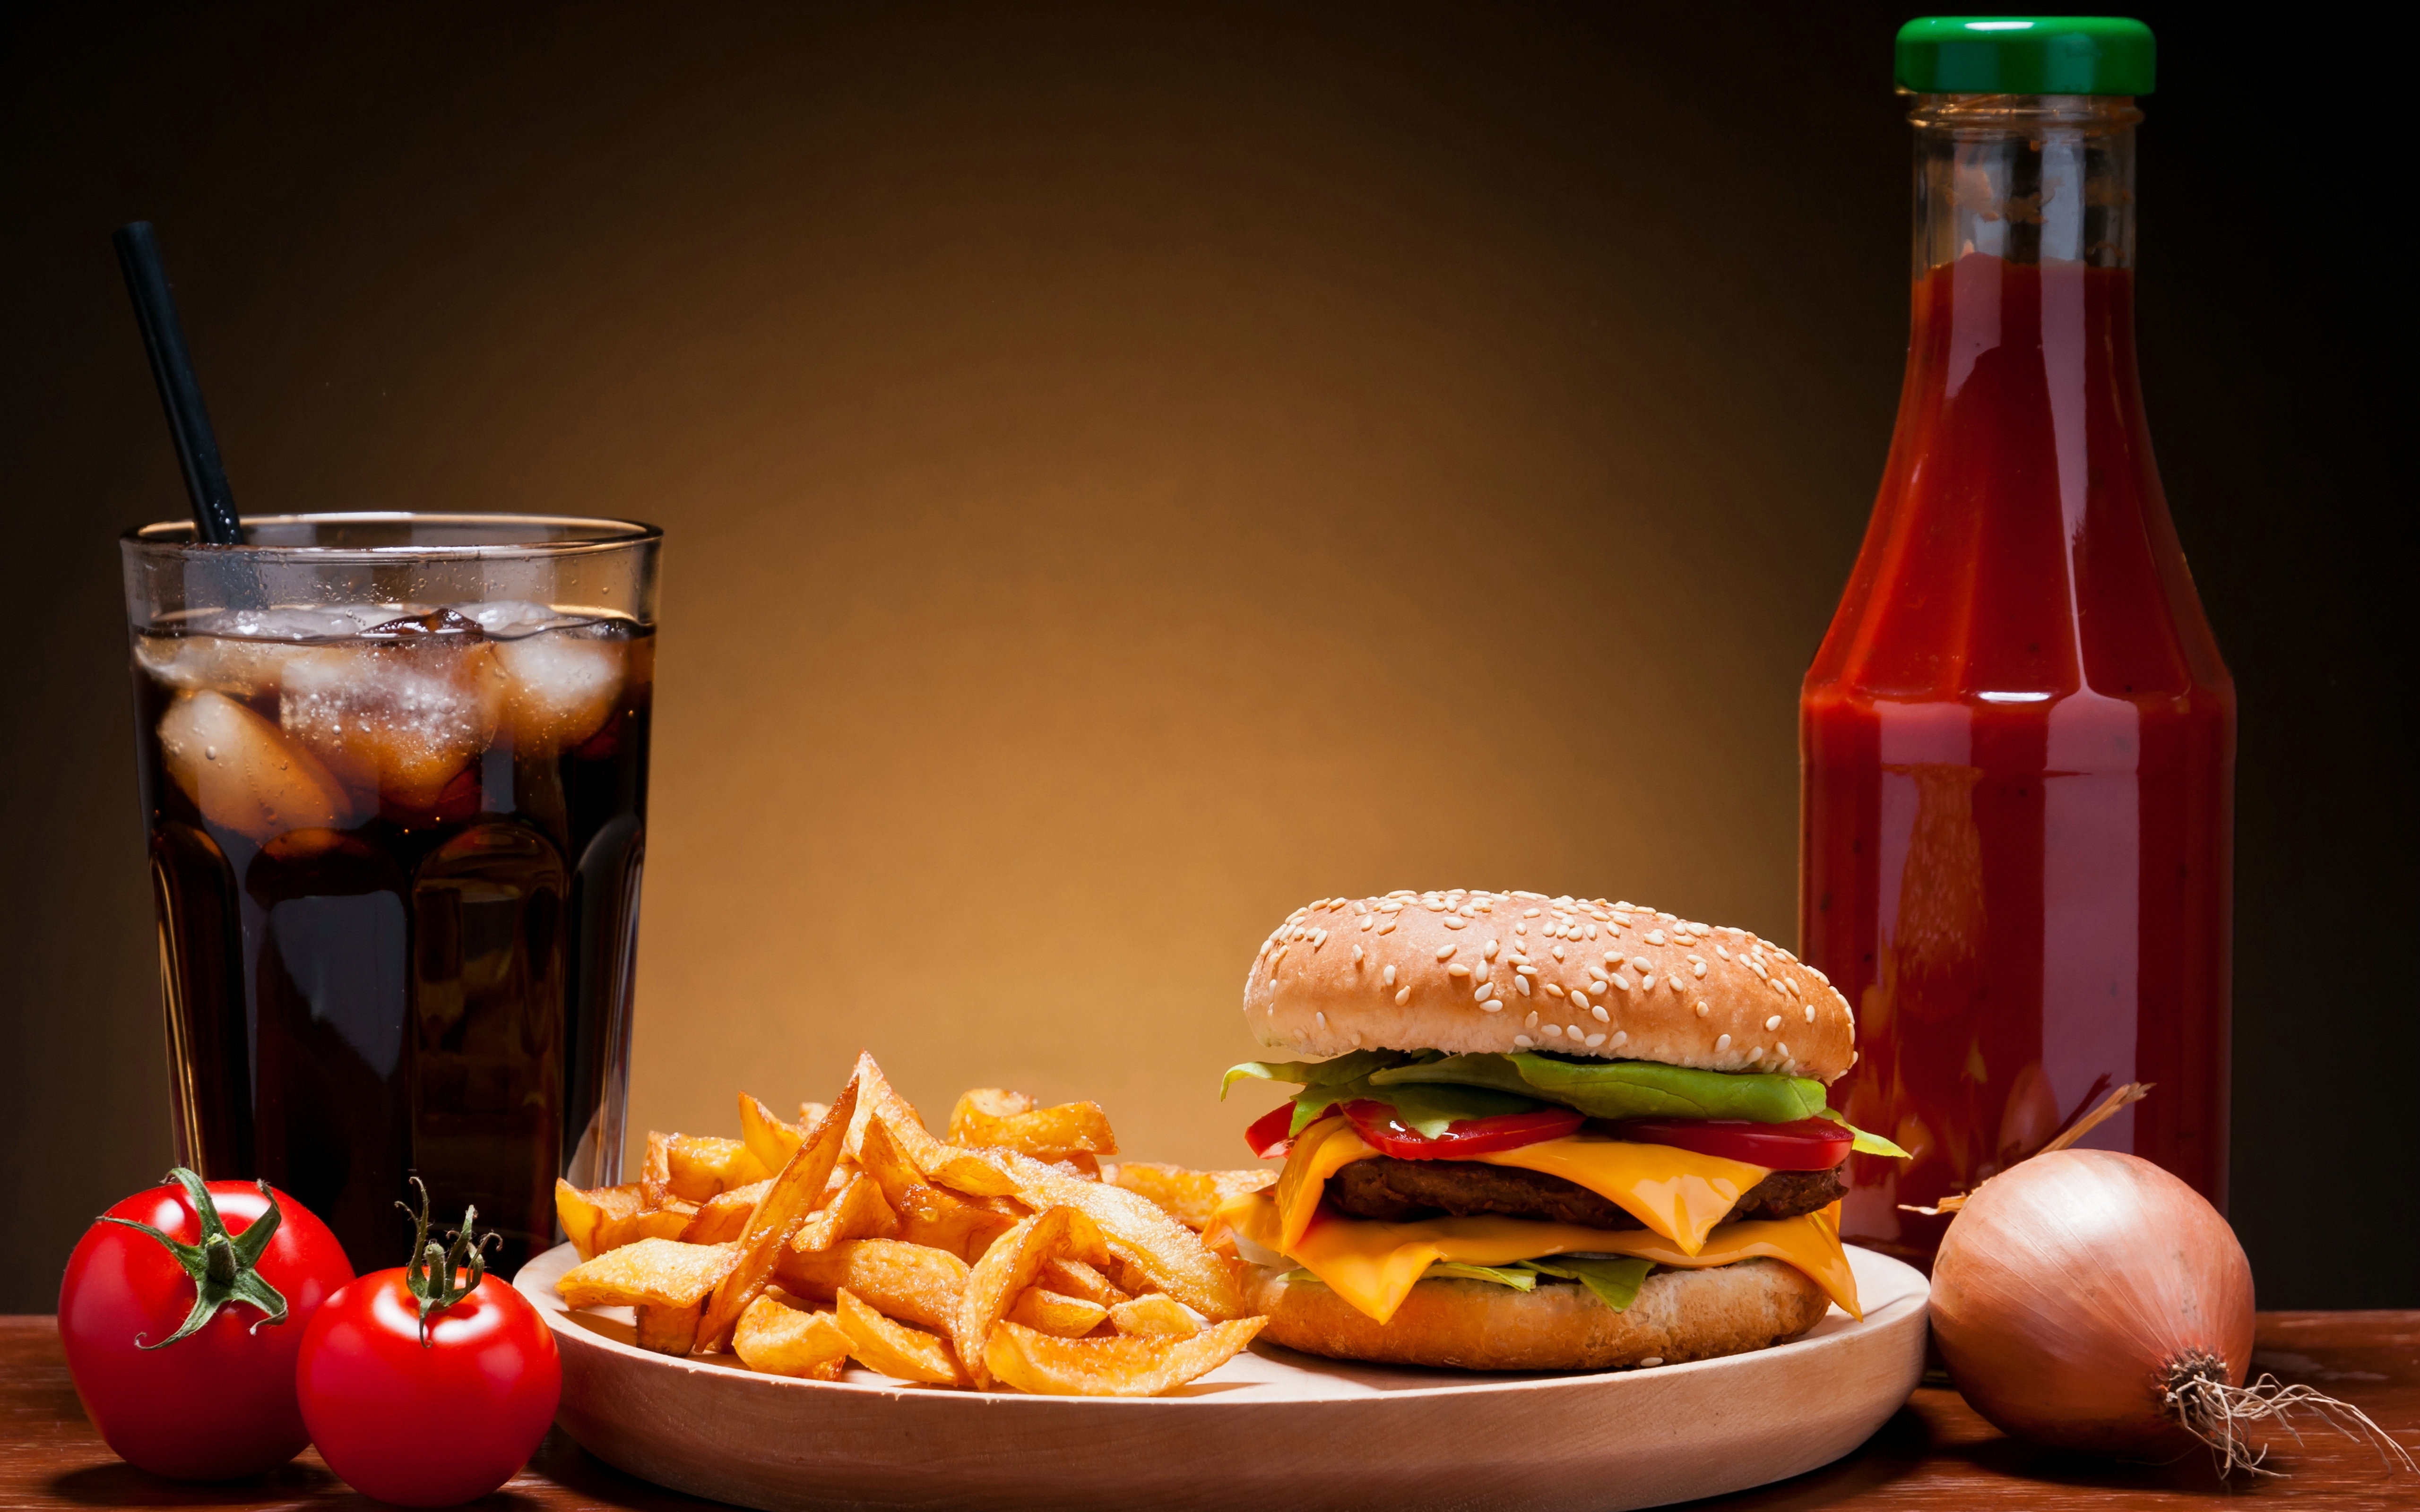 cibo wallpaper hd,cibo spazzatura,cibo,hamburger,fast food,hamburger al formaggio